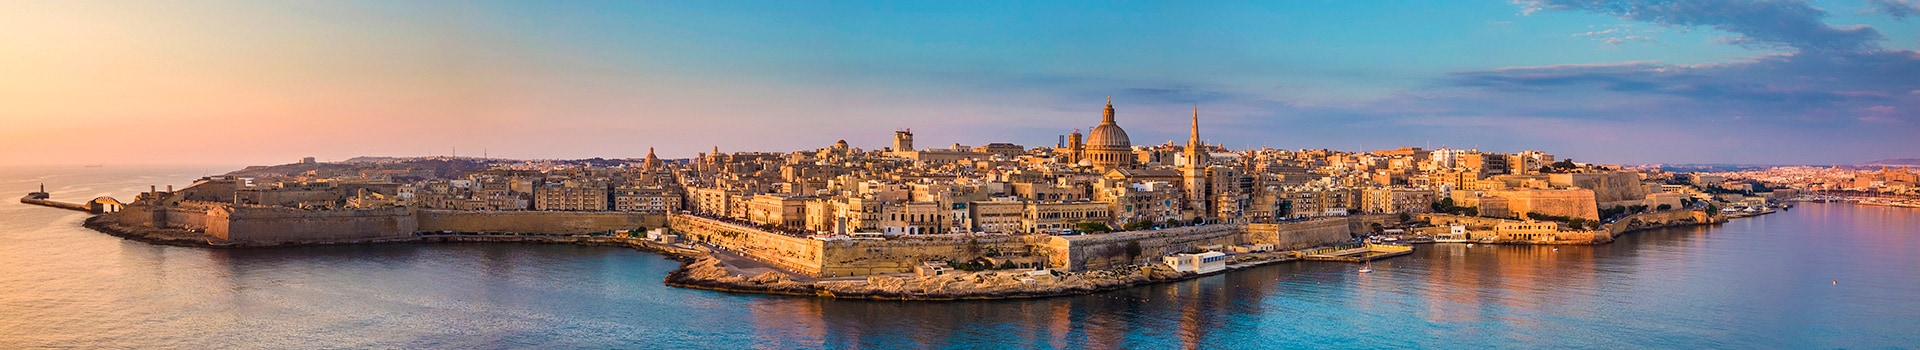 Porto - Malta